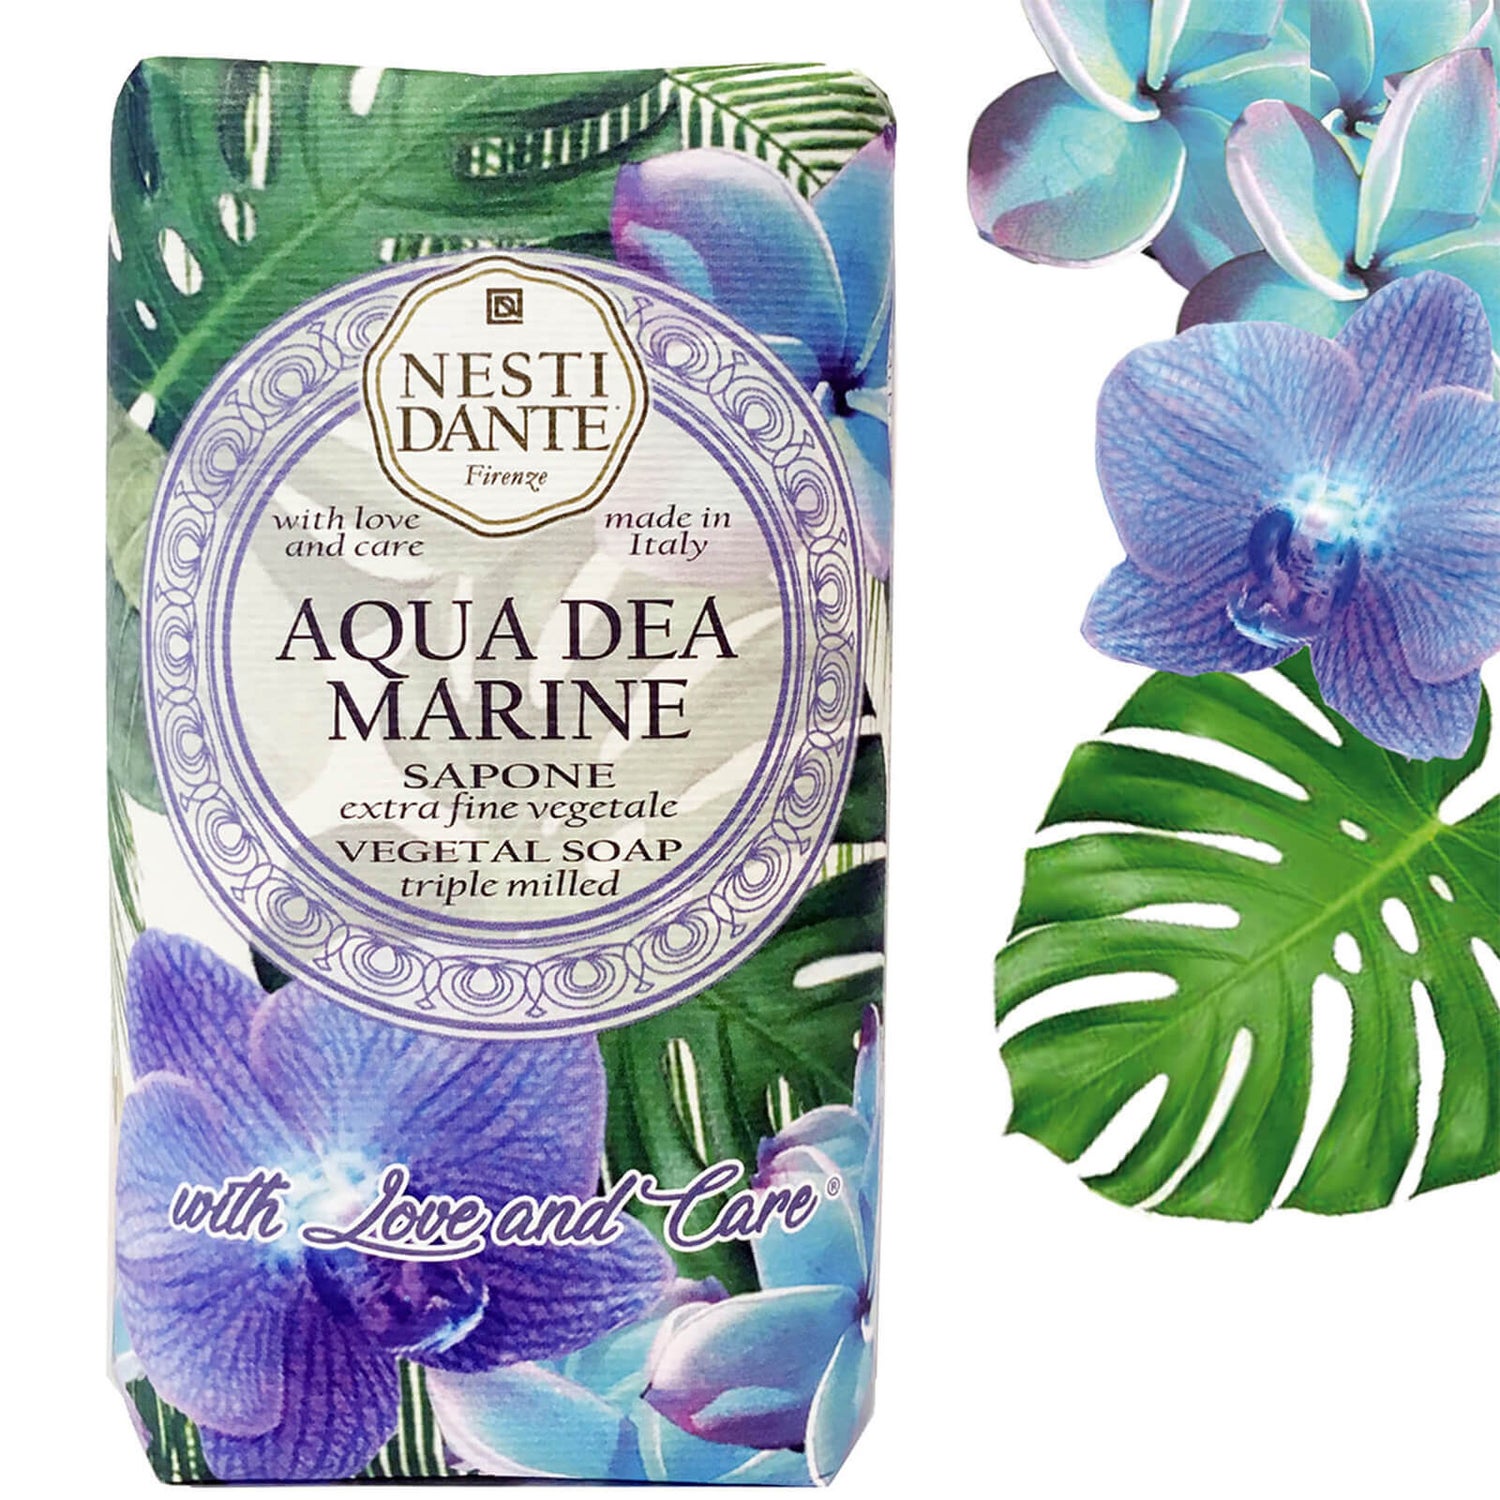 Nesti Dante Aqua Dea Marine No. 7 Soap 250g